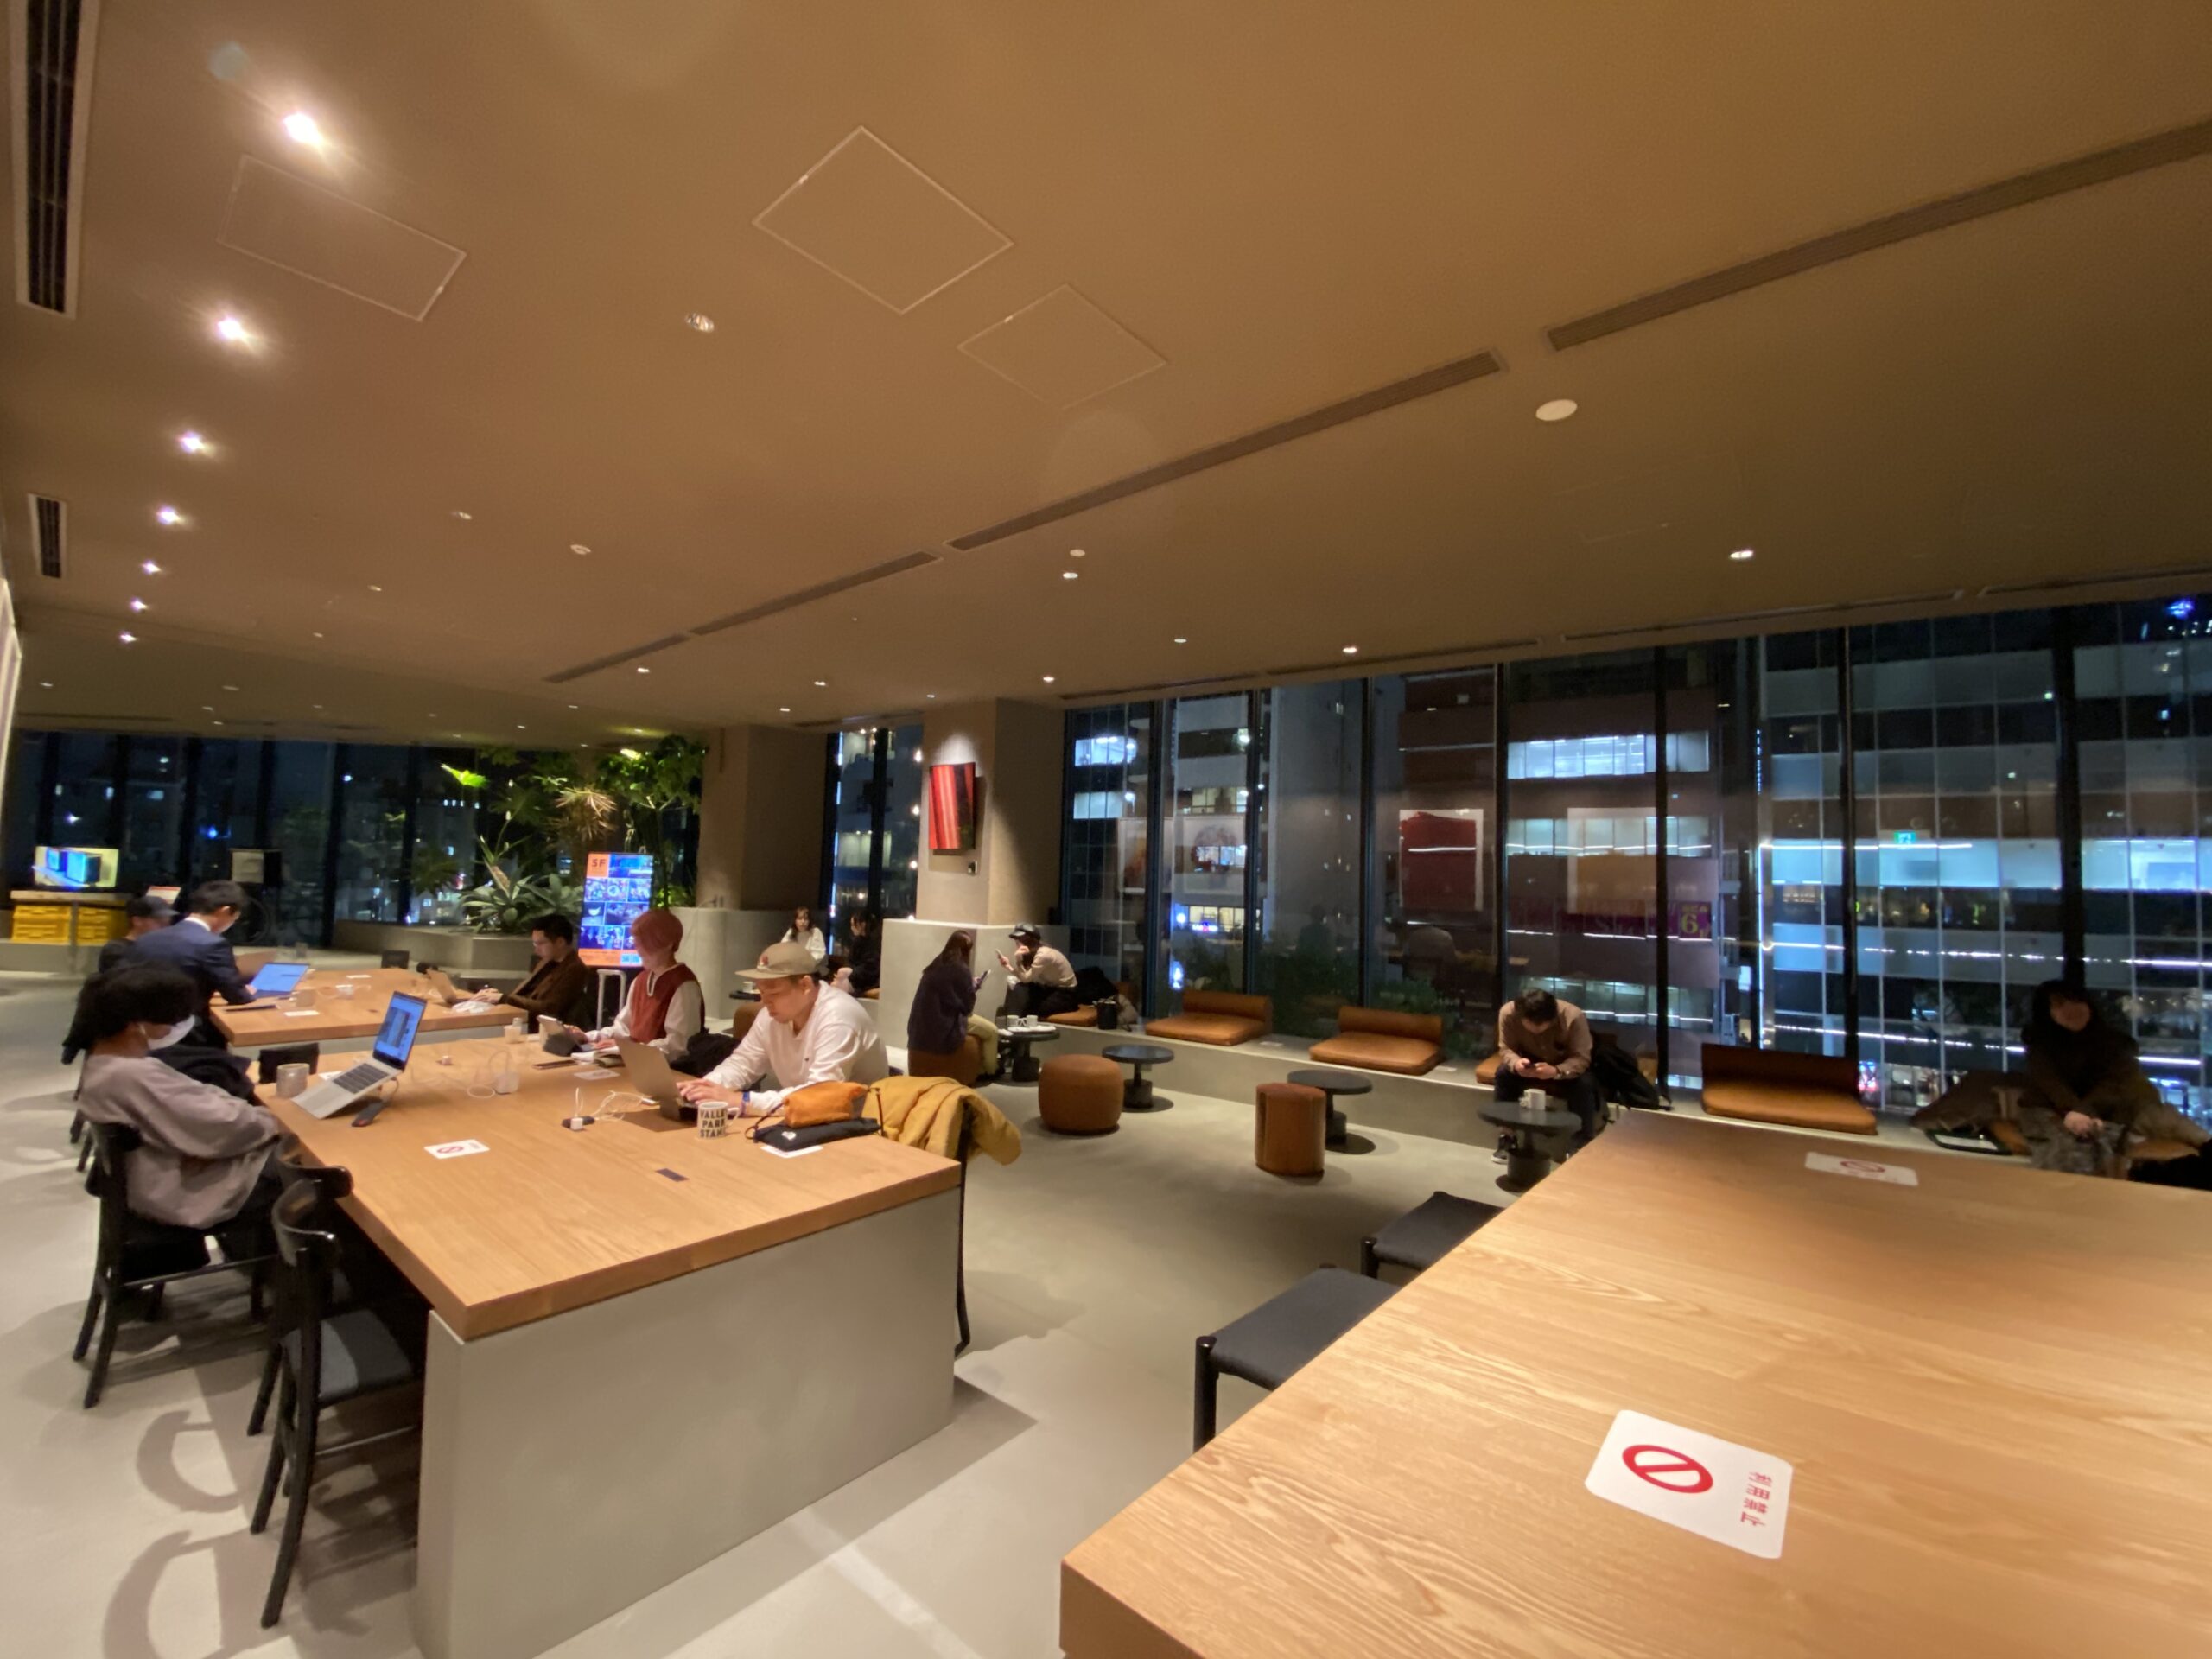 ブルートラベルエンジニア パソコン作業（プログラミング学習環境）におすすめのカフェ|渋谷 VALLEY PARK STAND（ヴァリー・パーク・スタンド）